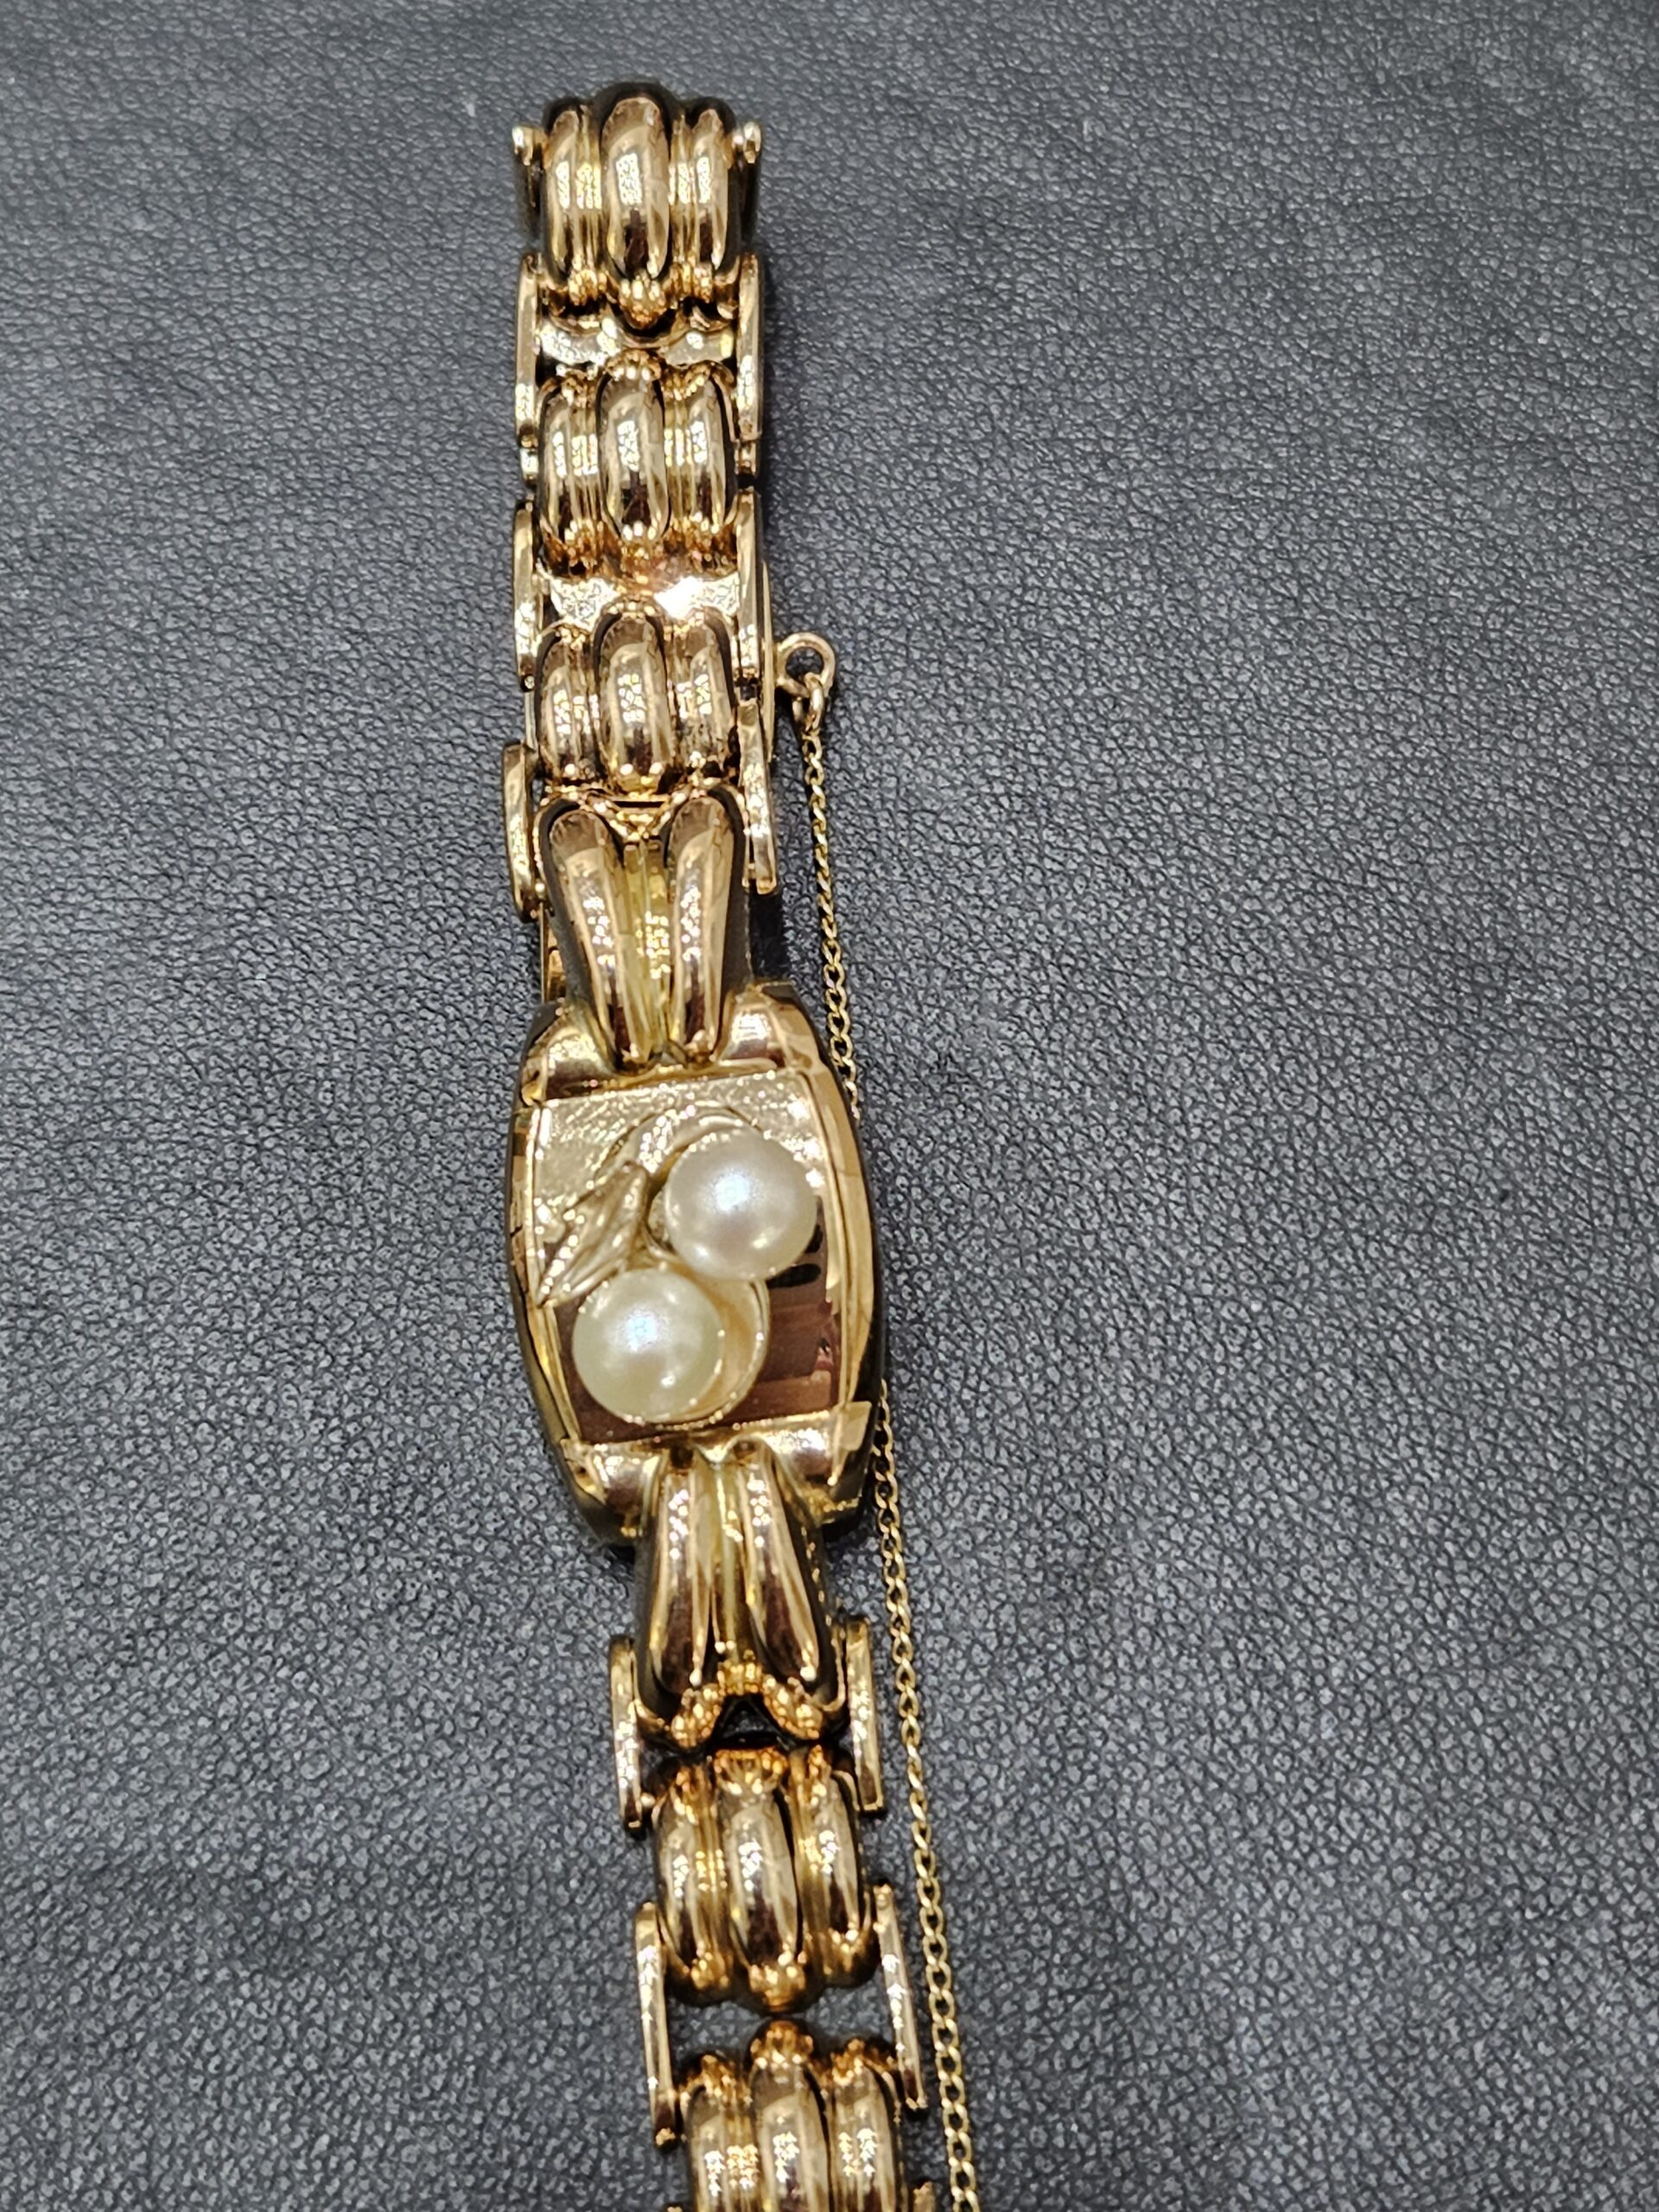 Magnifique bracelet en or 18 carats orné de perles années 1940 - SCARLETT  bijoux